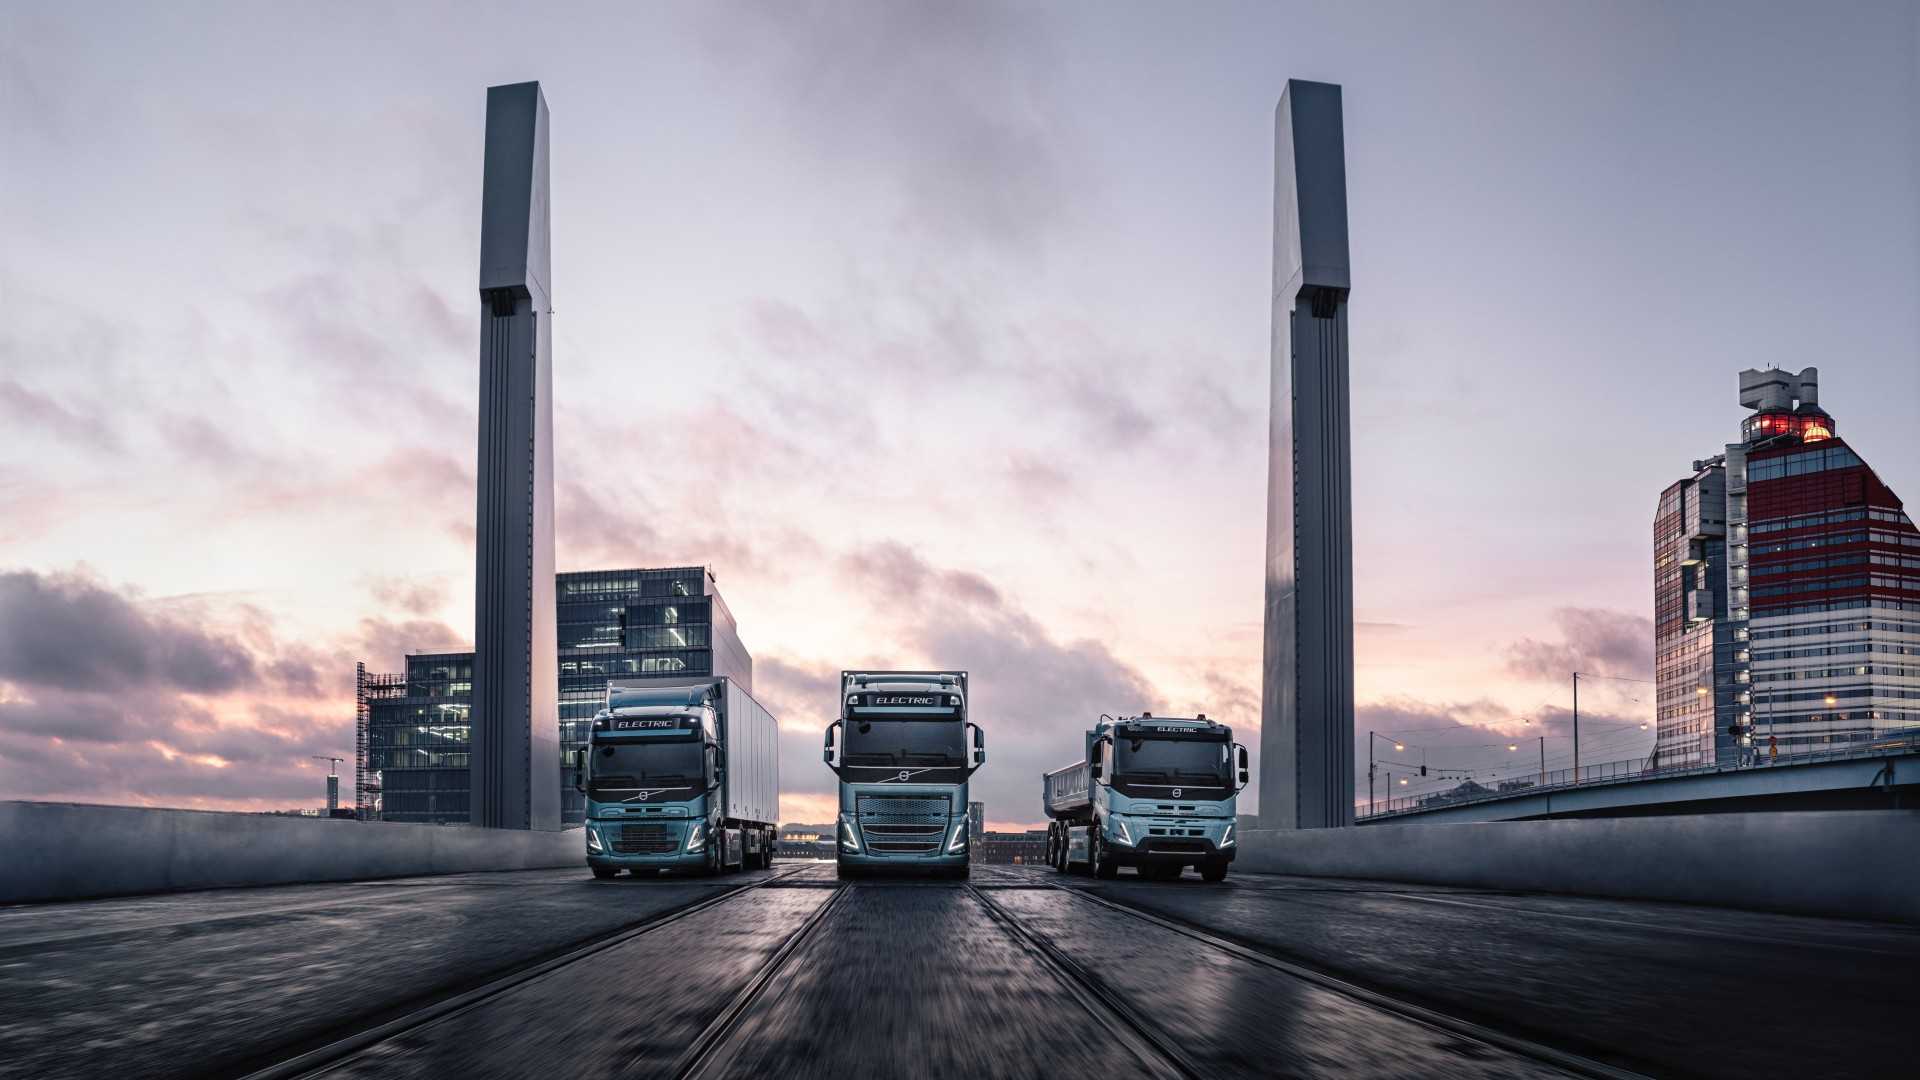 Planta de ensamblaje de baterías para vehículos eléctricos de Volvo Trucks se inaugurará en el tercer trimestre de 2022